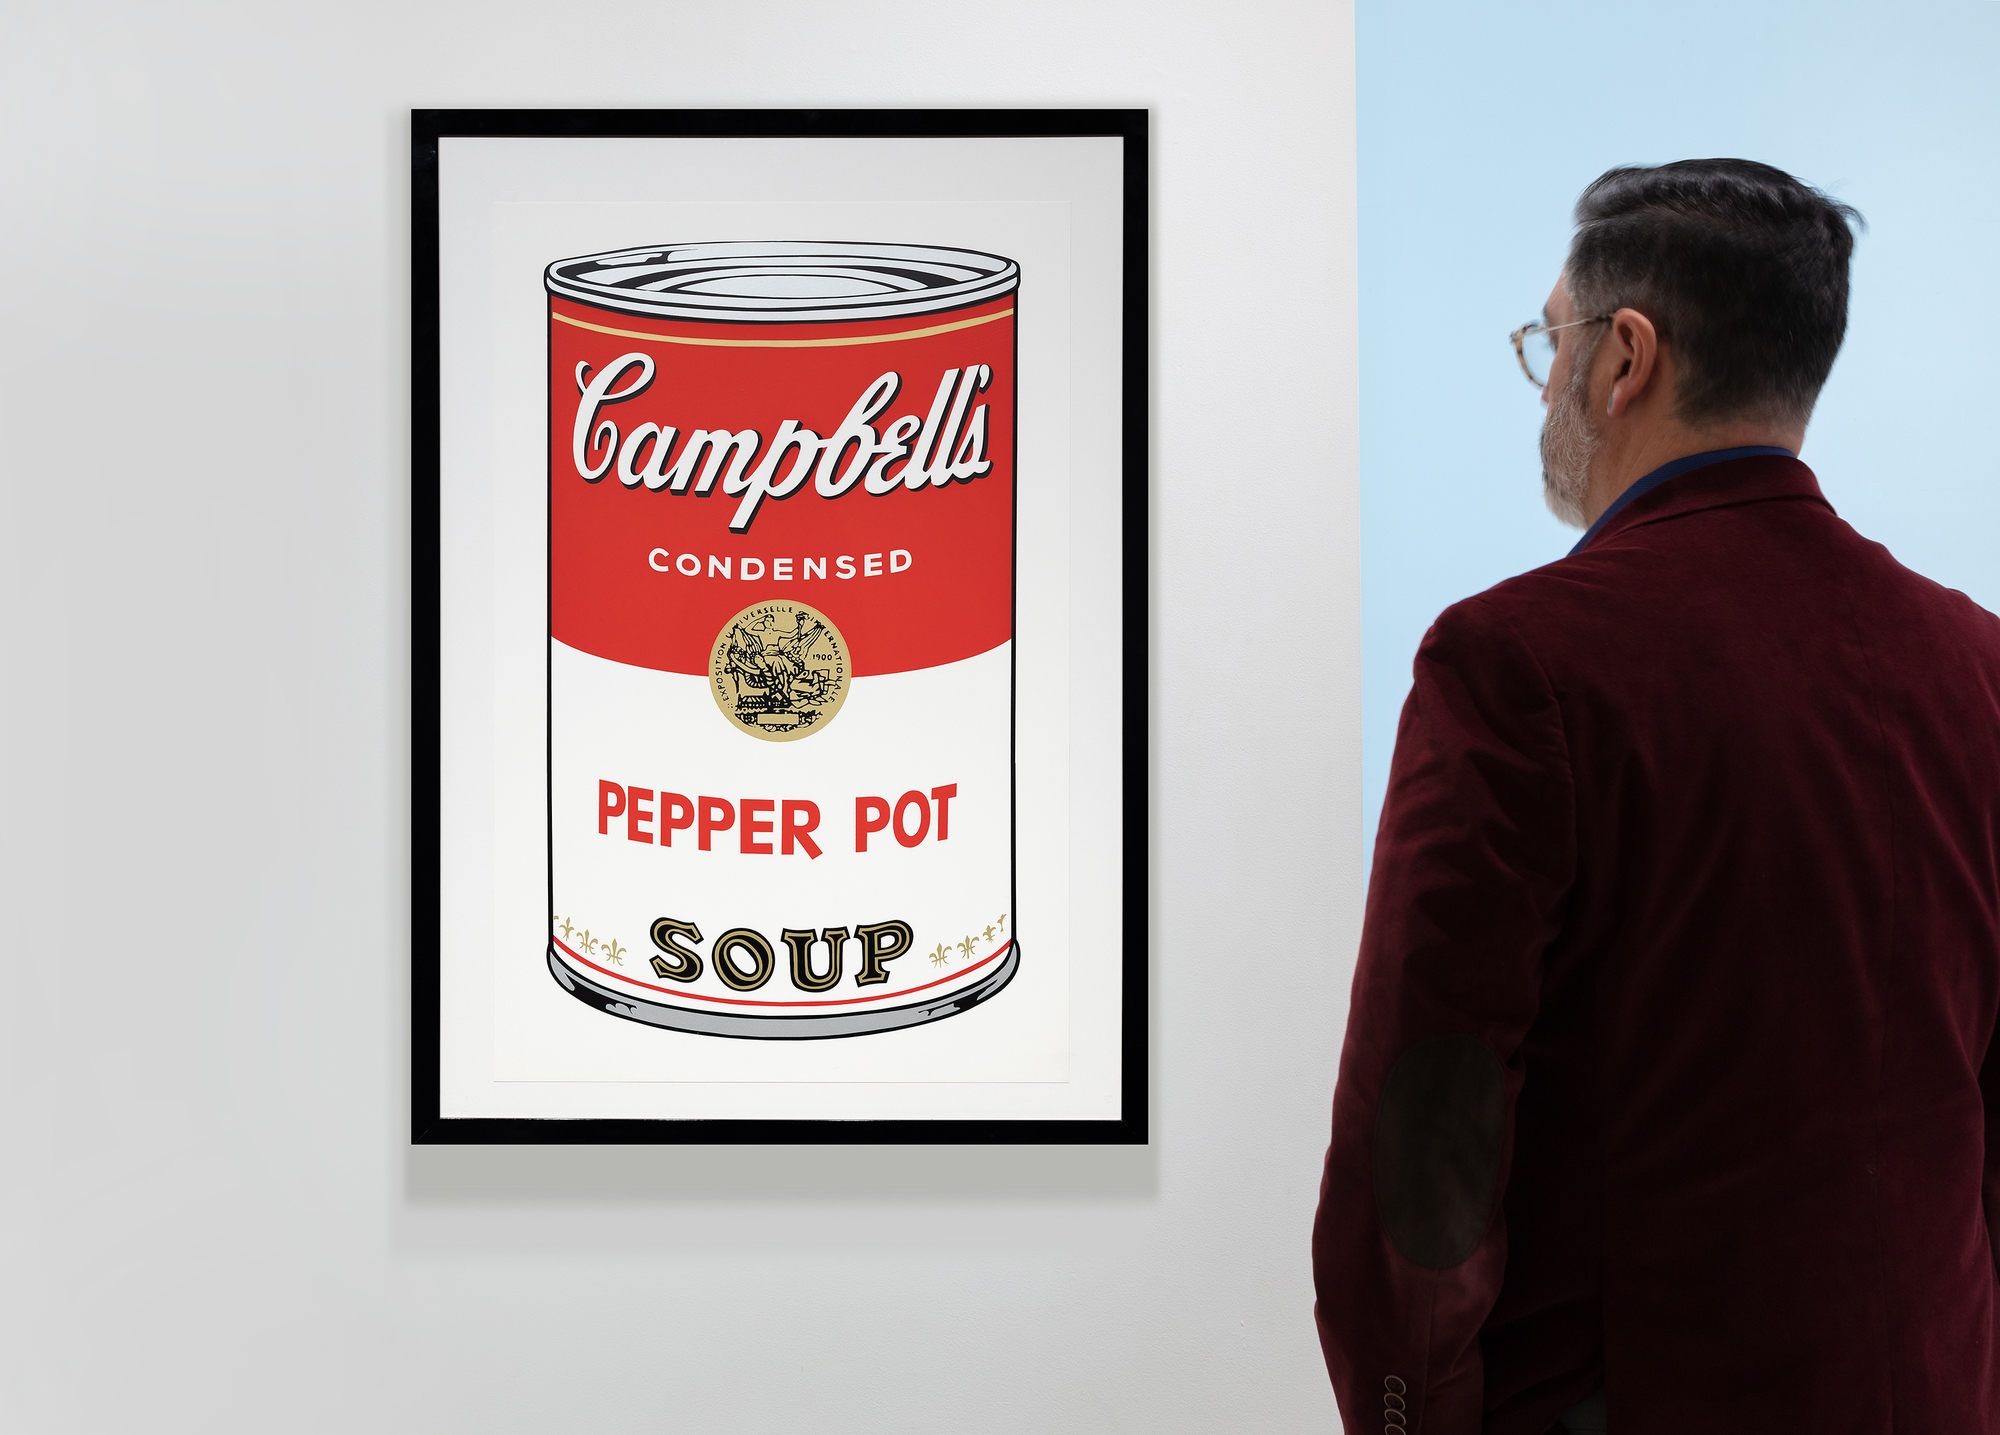 La série des boîtes de soupe Campbell d&#039;Andy Warhol marque un tournant dans sa carrière et dans le mouvement du Pop Art. Cette série, composée de 32 toiles représentant chacune une saveur différente, a révolutionné le monde de l&#039;art en élevant des produits de consommation courante au rang d&#039;œuvres d&#039;art. La sérigraphie Pepper Pot de 1968 utilise son style caractéristique de couleurs vives et plates et d&#039;images répétées, caractéristiques de la production de masse et de la culture de consommation. La sérigraphie, une technique commerciale, correspond à l&#039;intérêt de Warhol de brouiller les lignes entre le grand art et l&#039;art commercial, en remettant en question les valeurs et les perceptions artistiques.